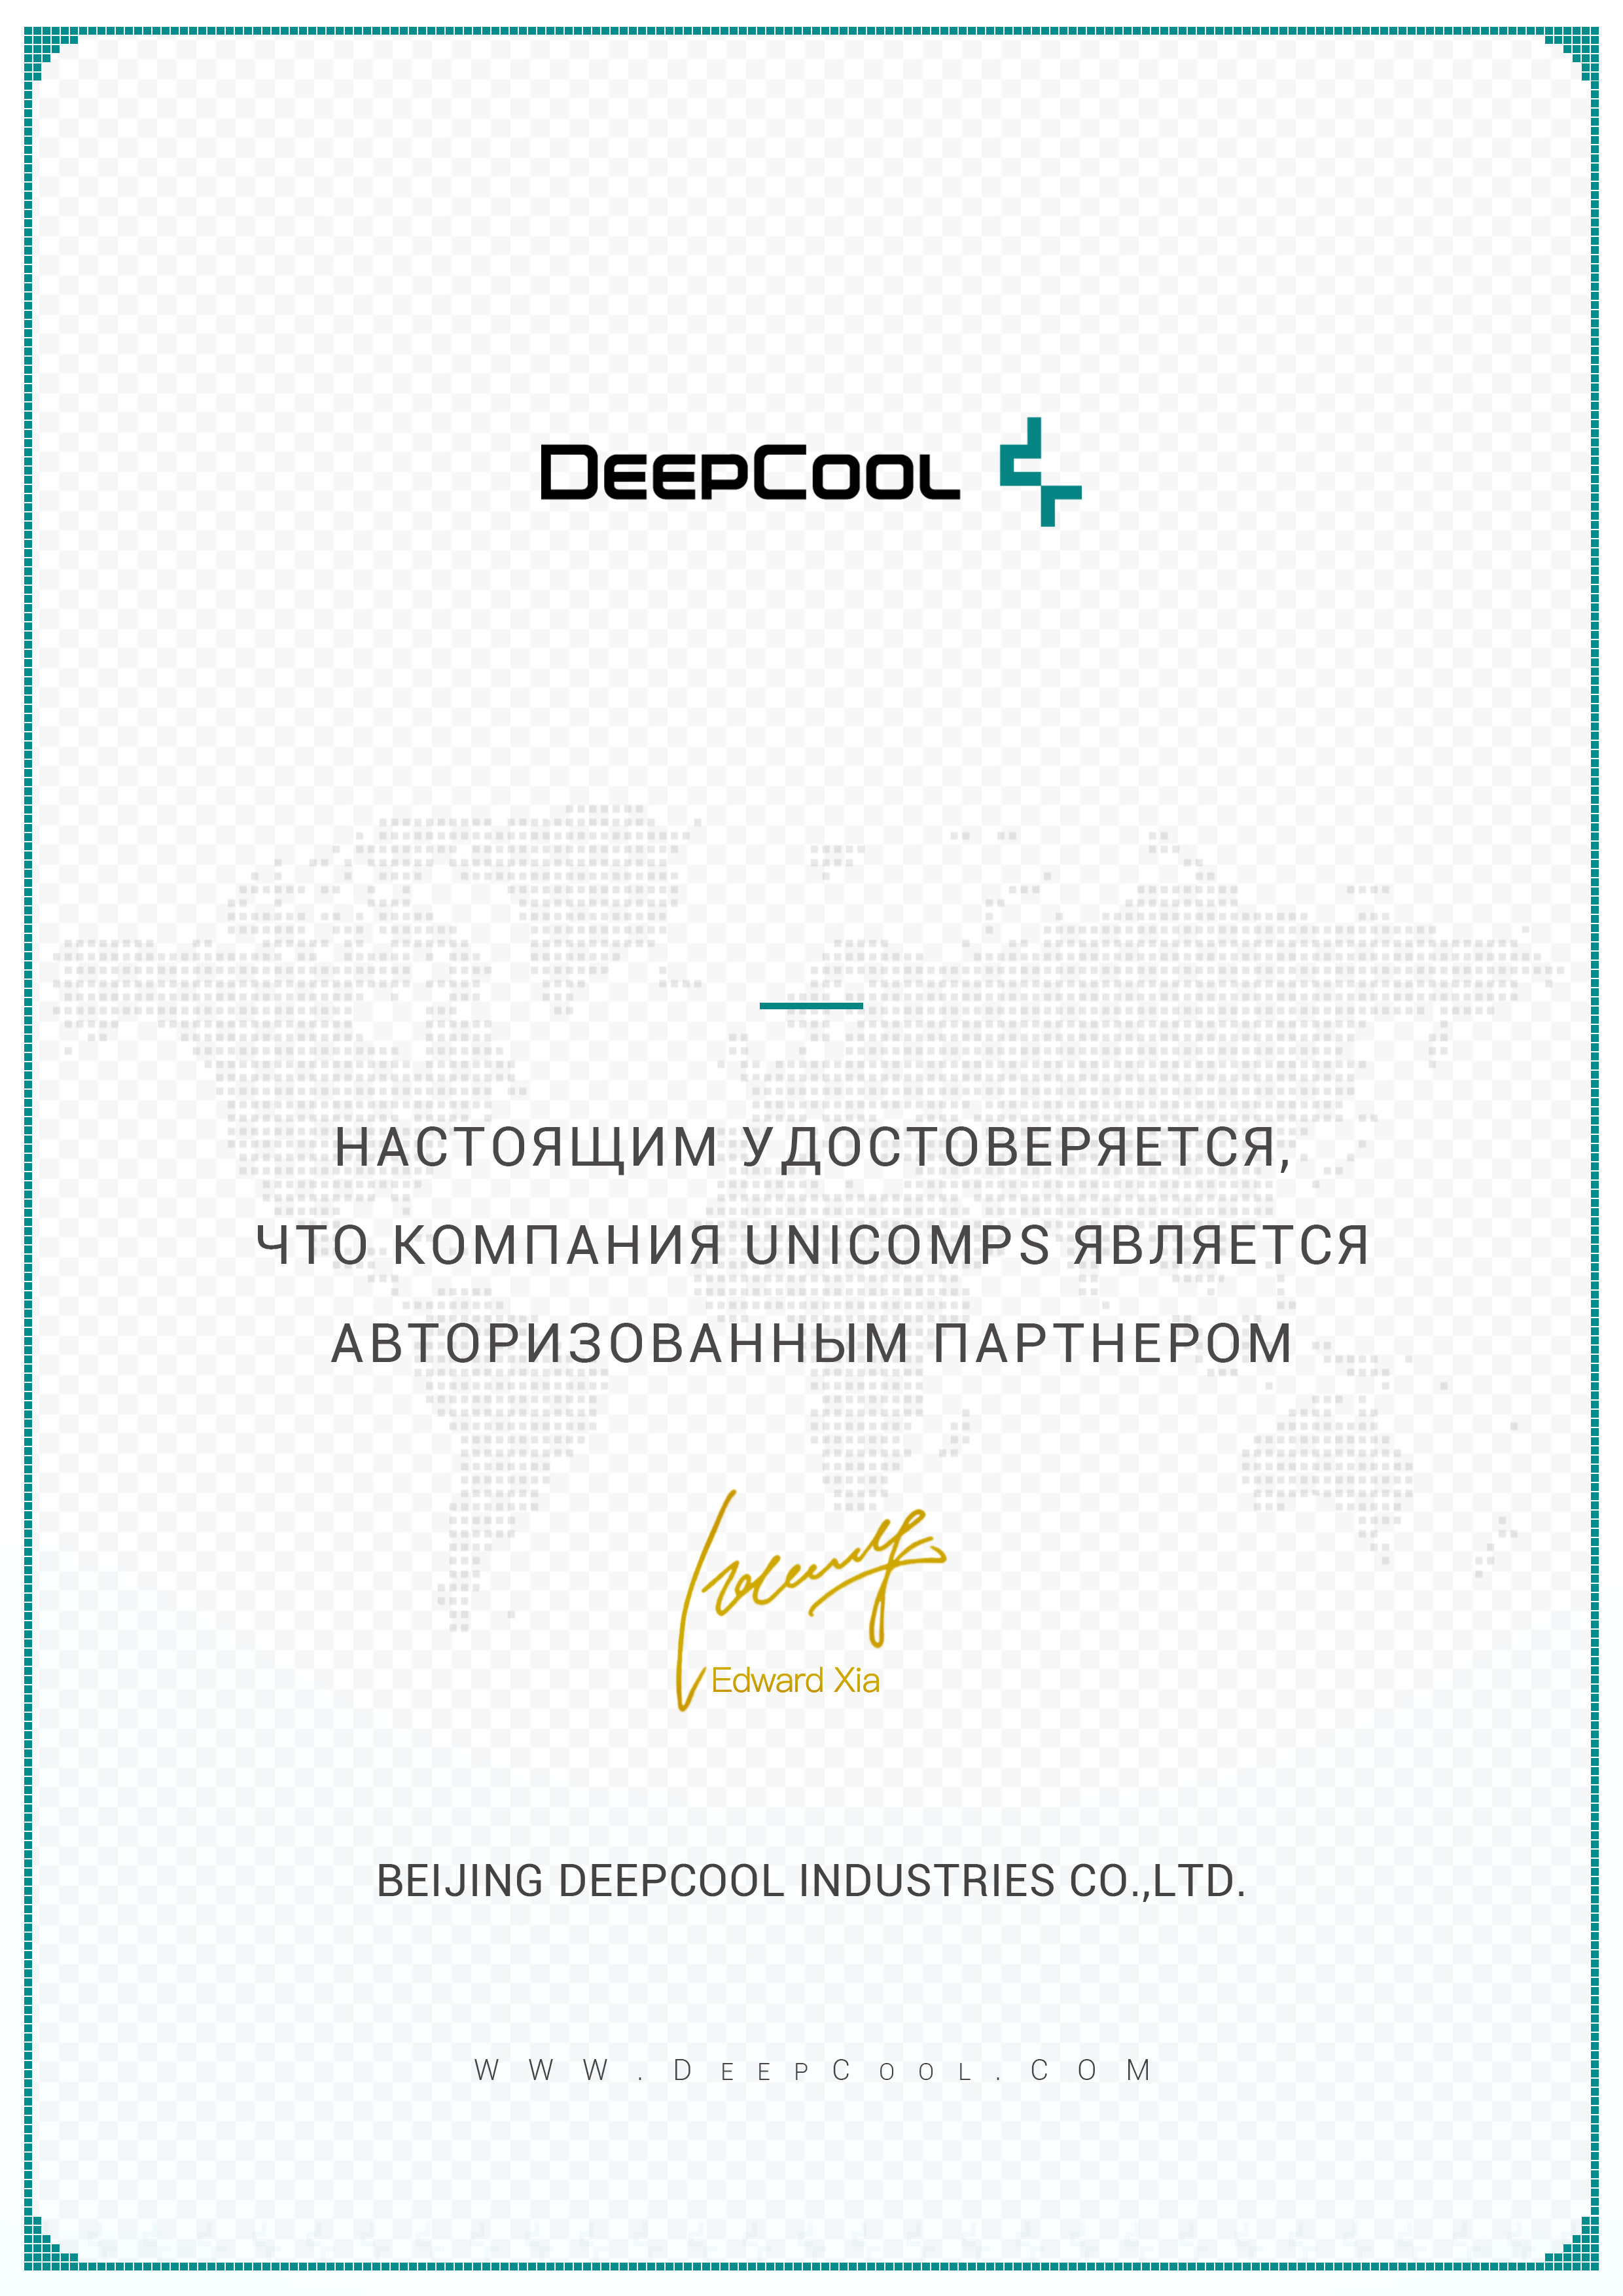 Сертификат deepcool